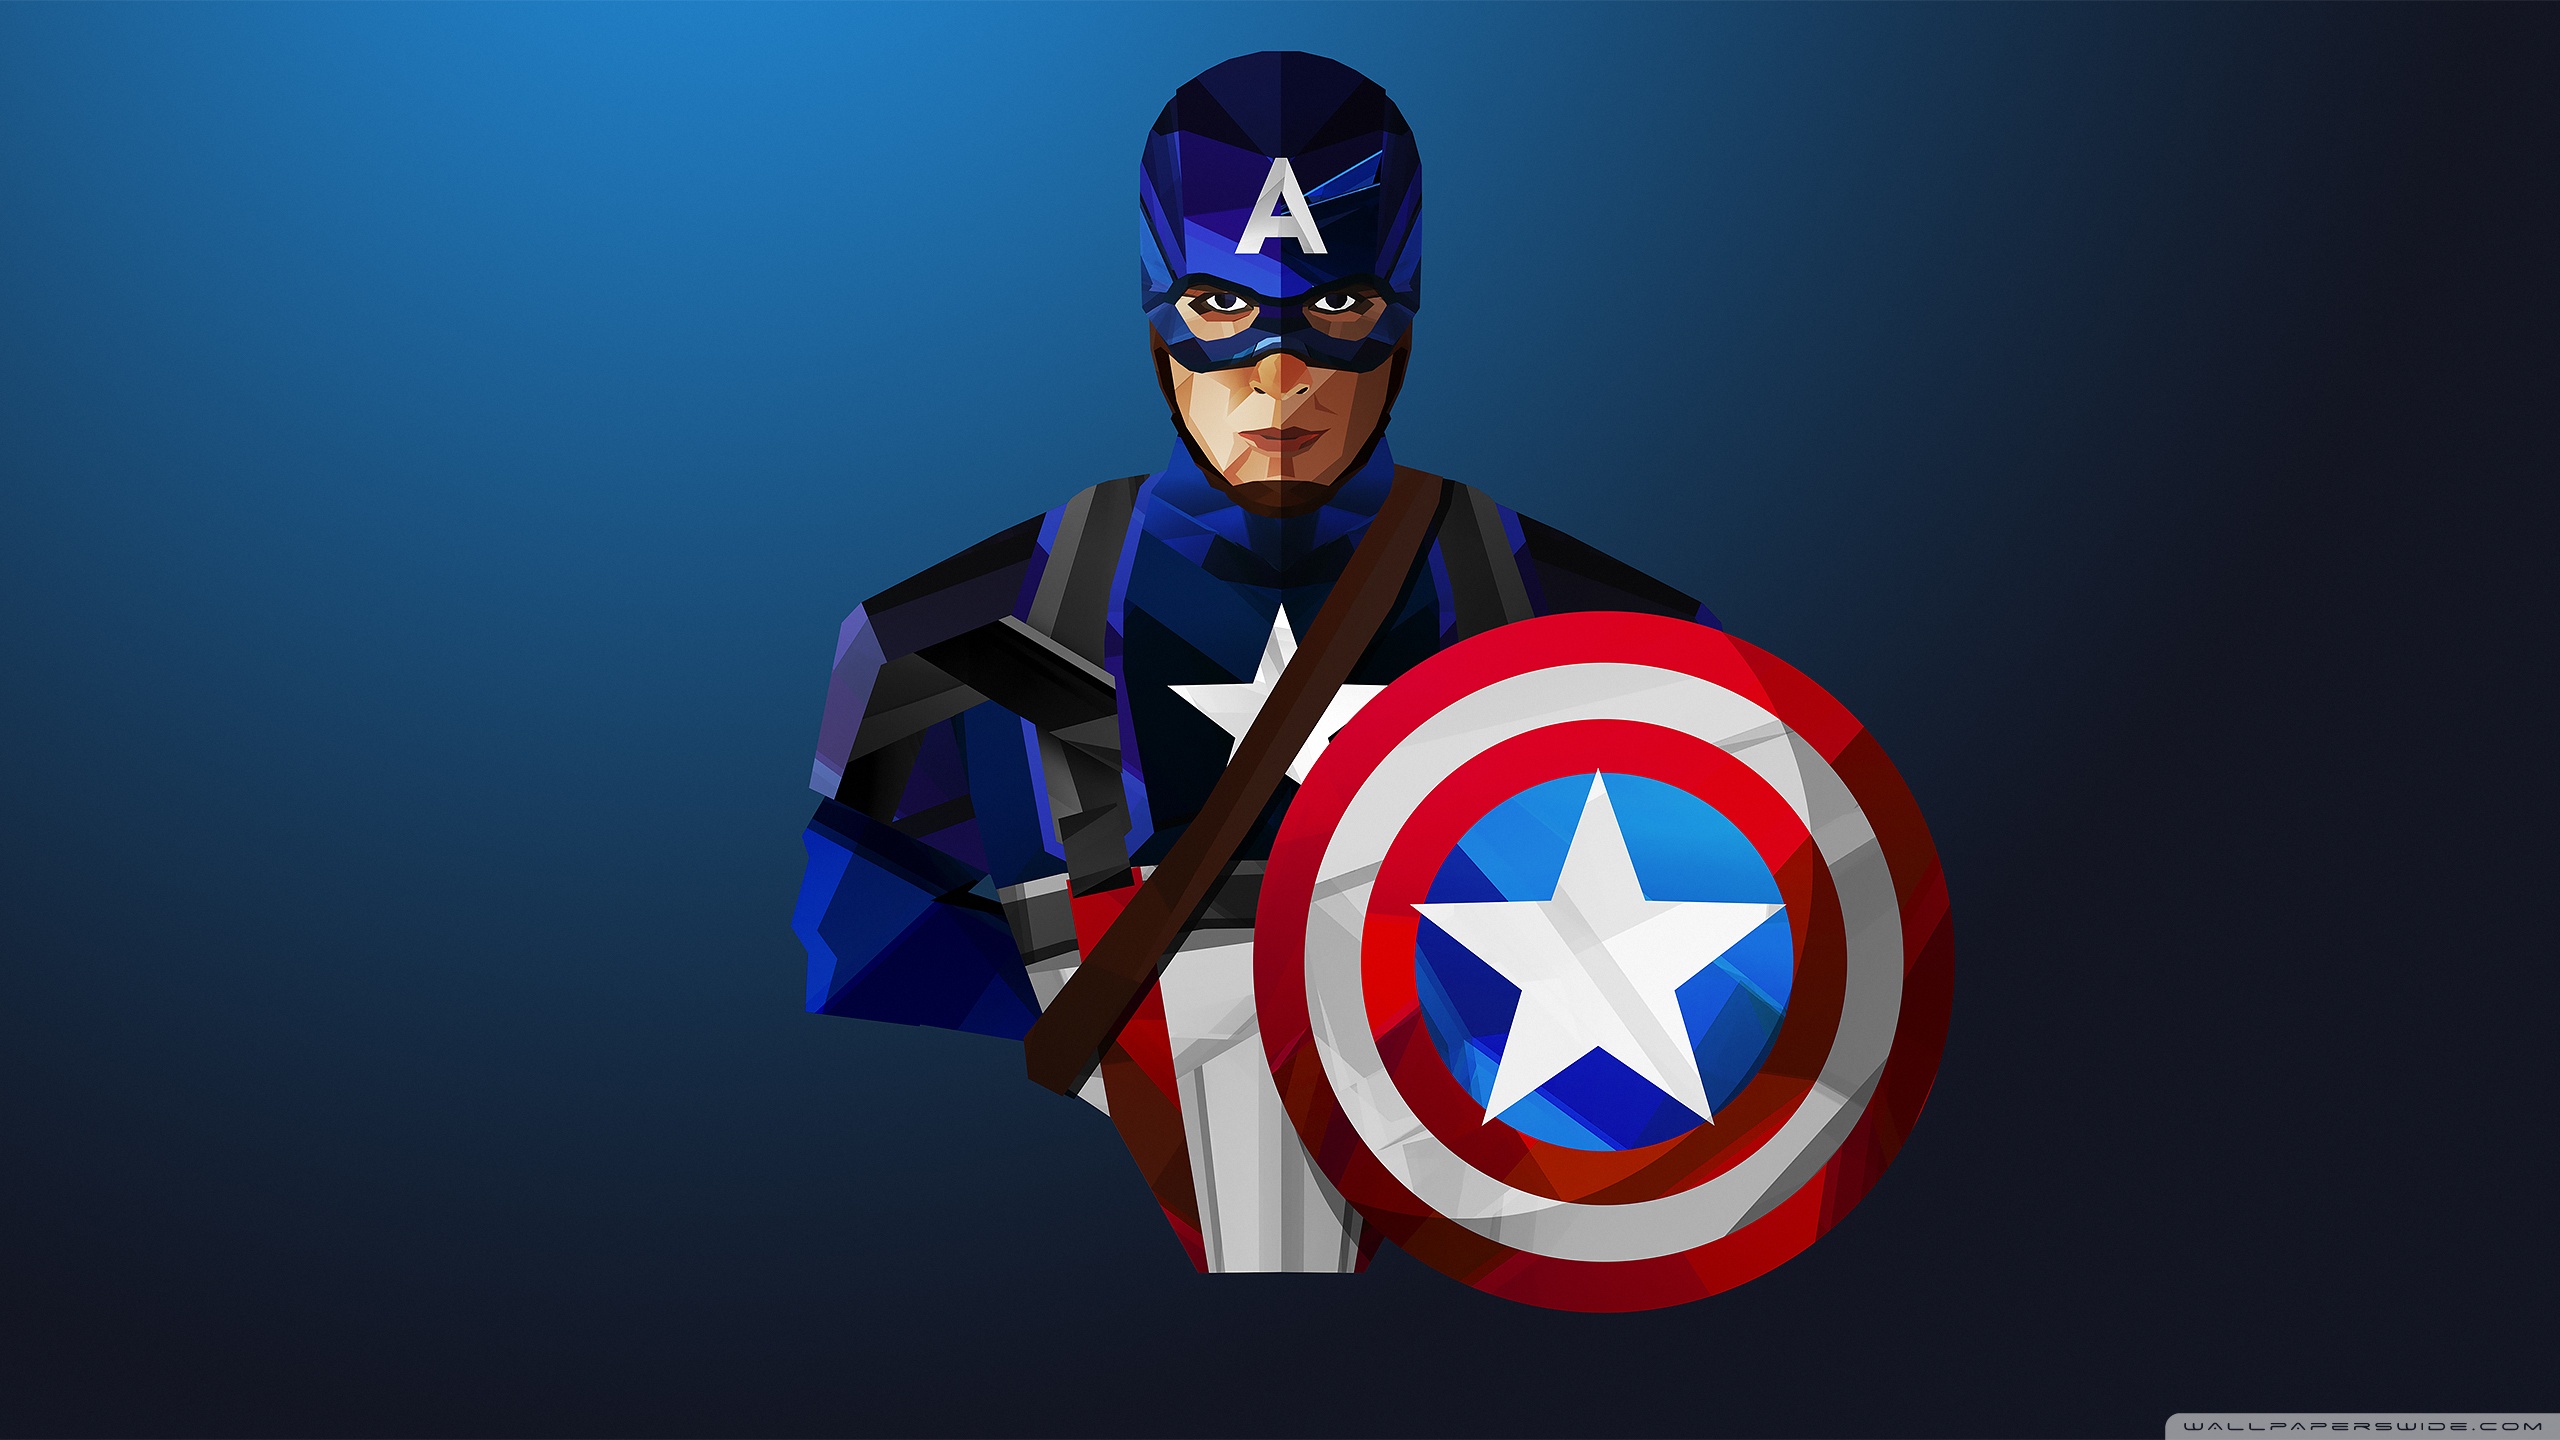 キャプテンアメリカ壁紙,キャプテン・アメリカ,スーパーヒーロー,架空の人物,ヒーロー,アート